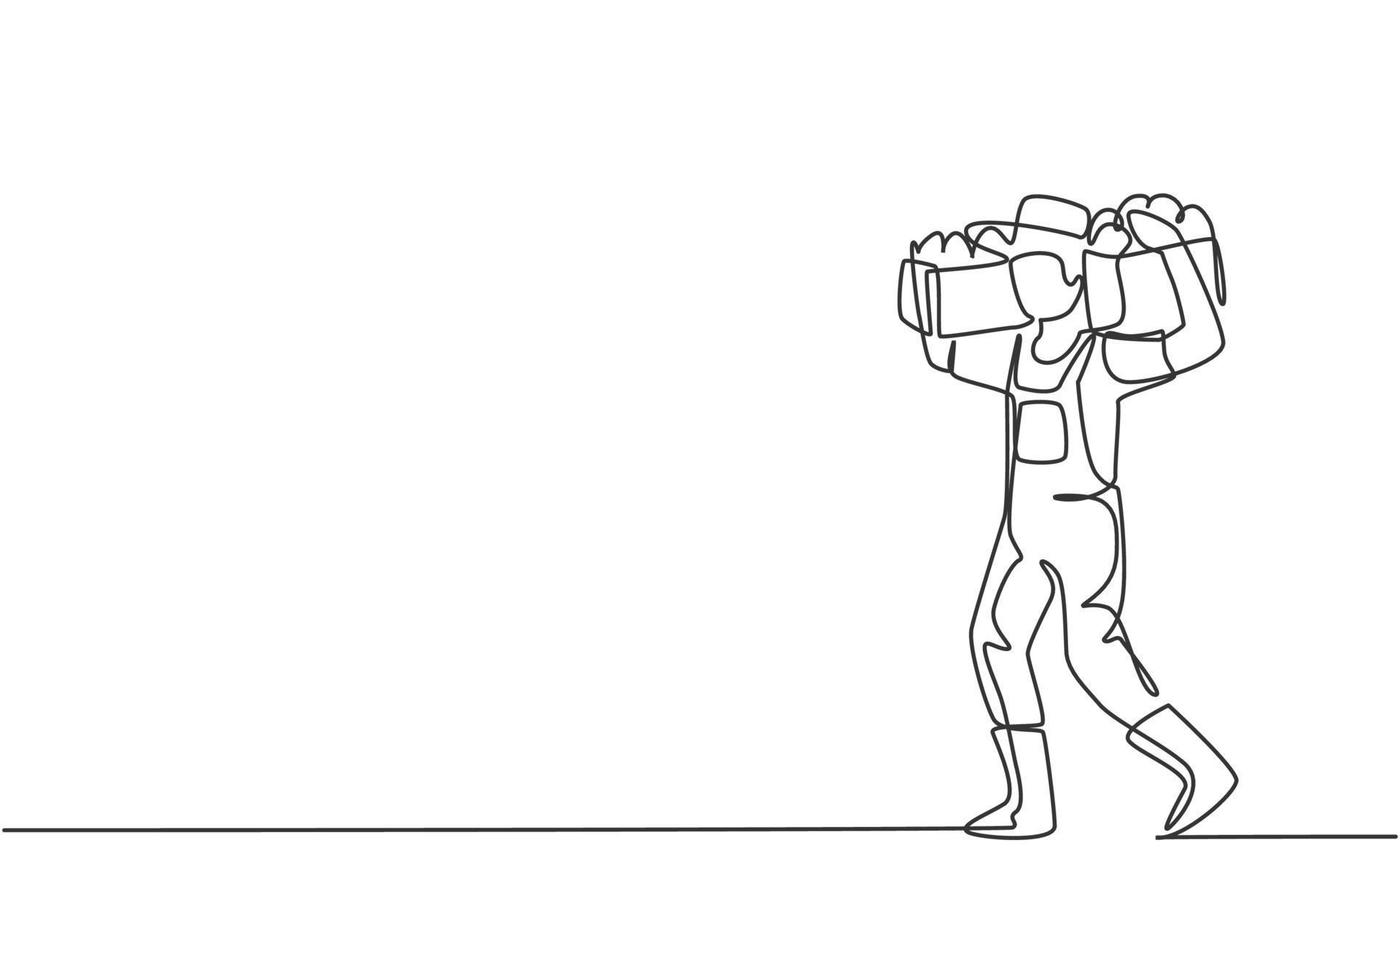 Eine einzige Strichzeichnung eines jungen männlichen Bauern, der die Kiste und den Obstkorb auf seinen Schultern schulterte. Landwirtschaft Herausforderung Minimalkonzept. moderne durchgehende Linie zeichnen Design-Grafik-Vektor-Illustration. vektor